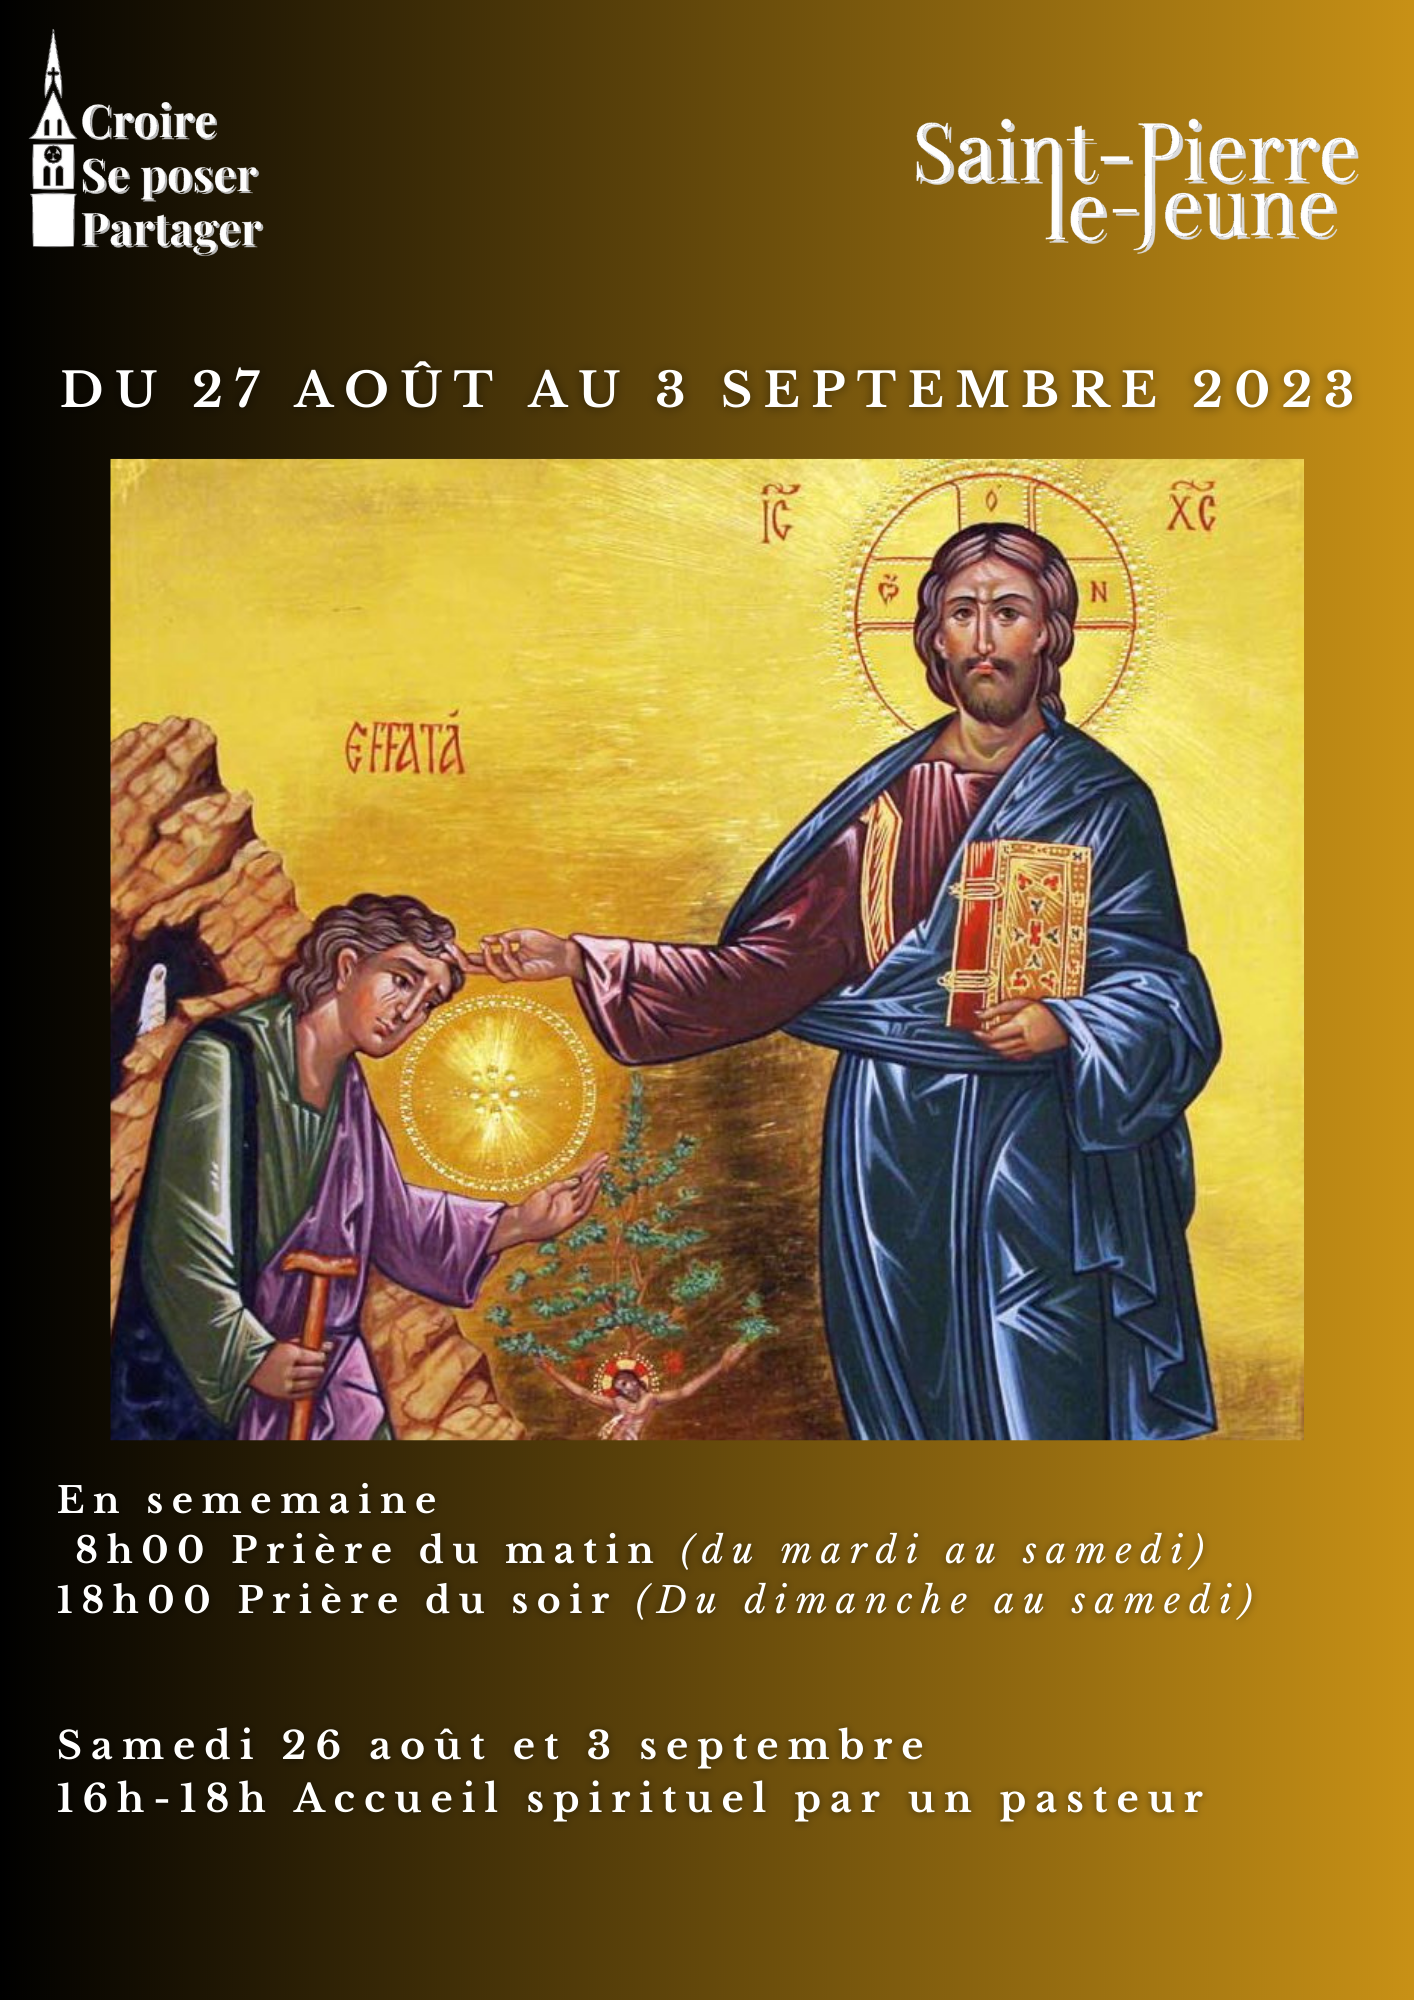 Semaine paroissiale - du 26 août au 3 septembre 2023